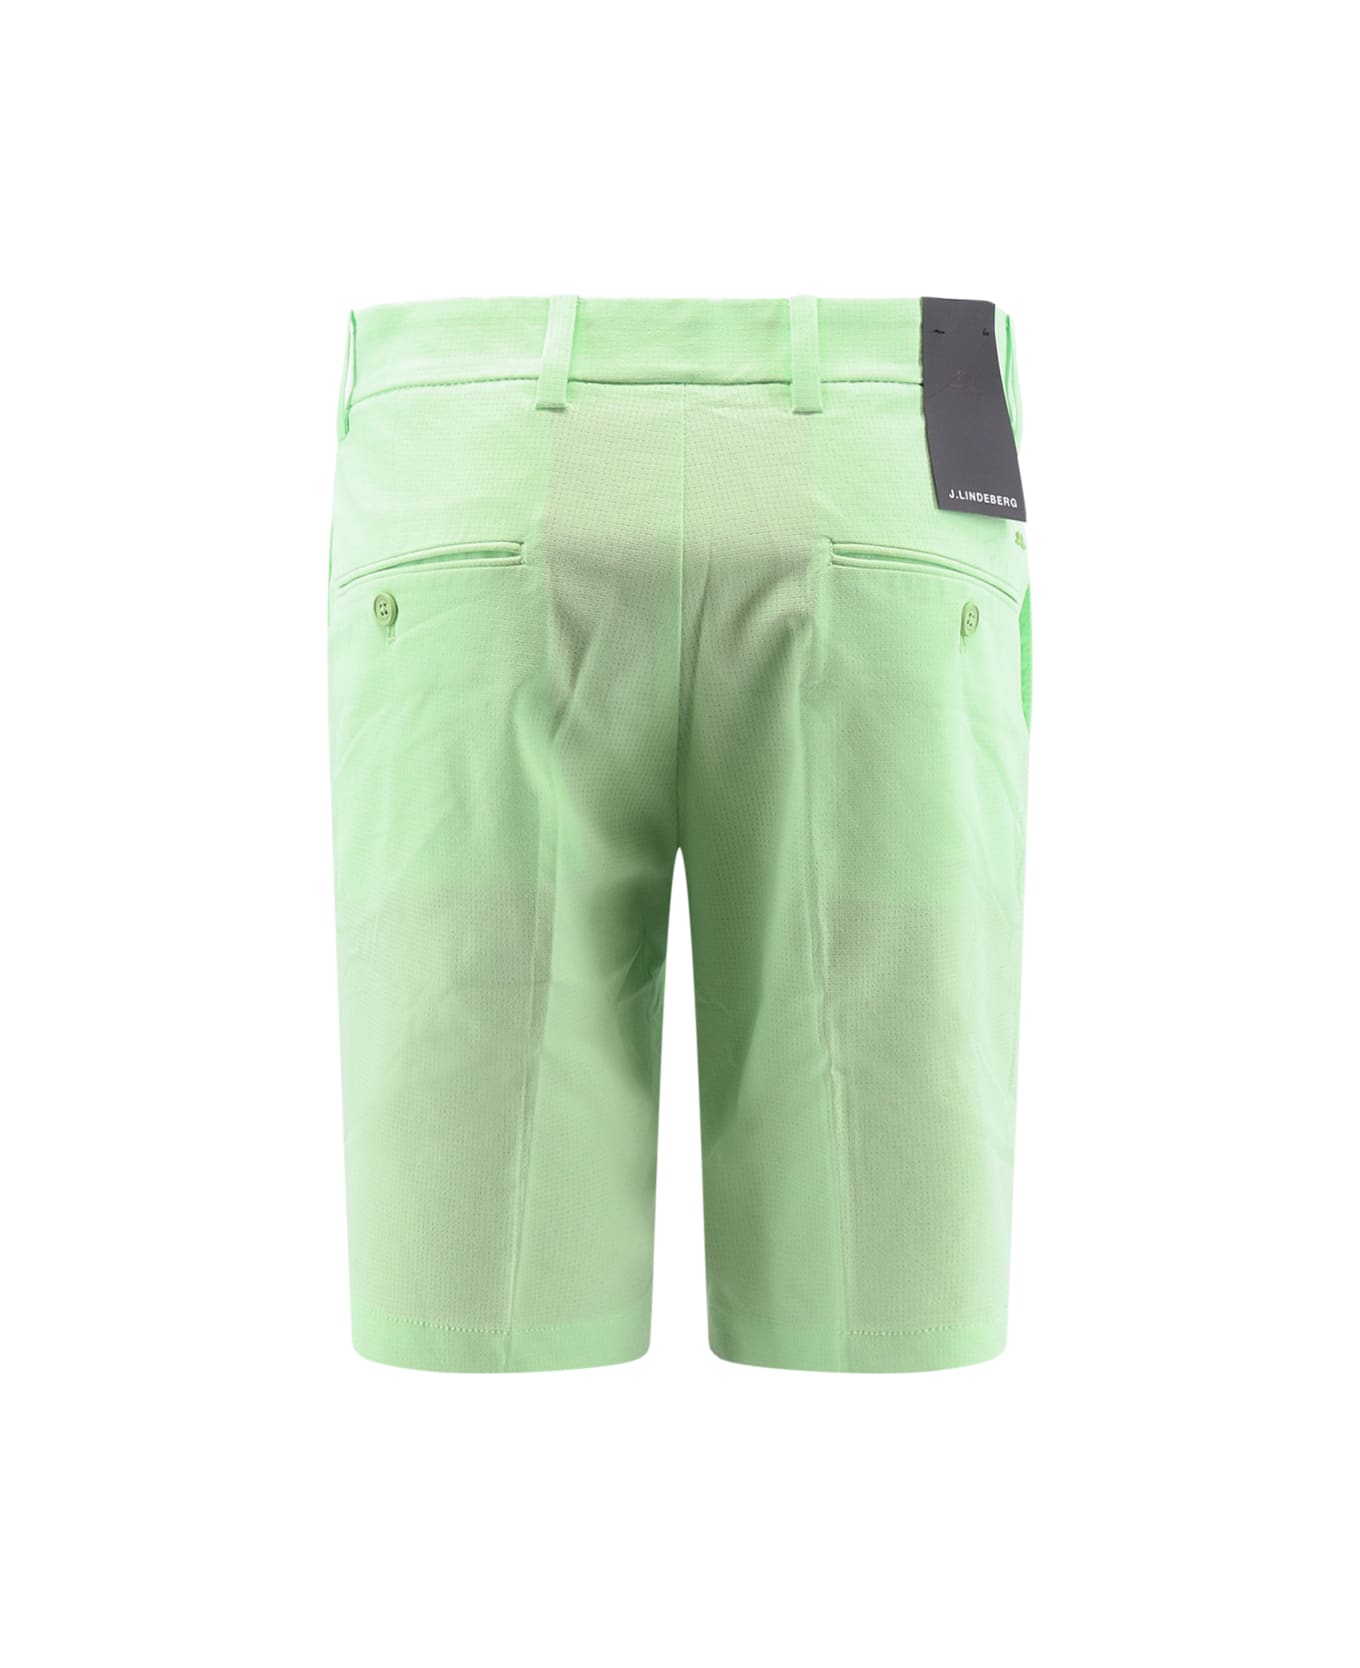 J.Lindeberg Bermuda Shorts - Green